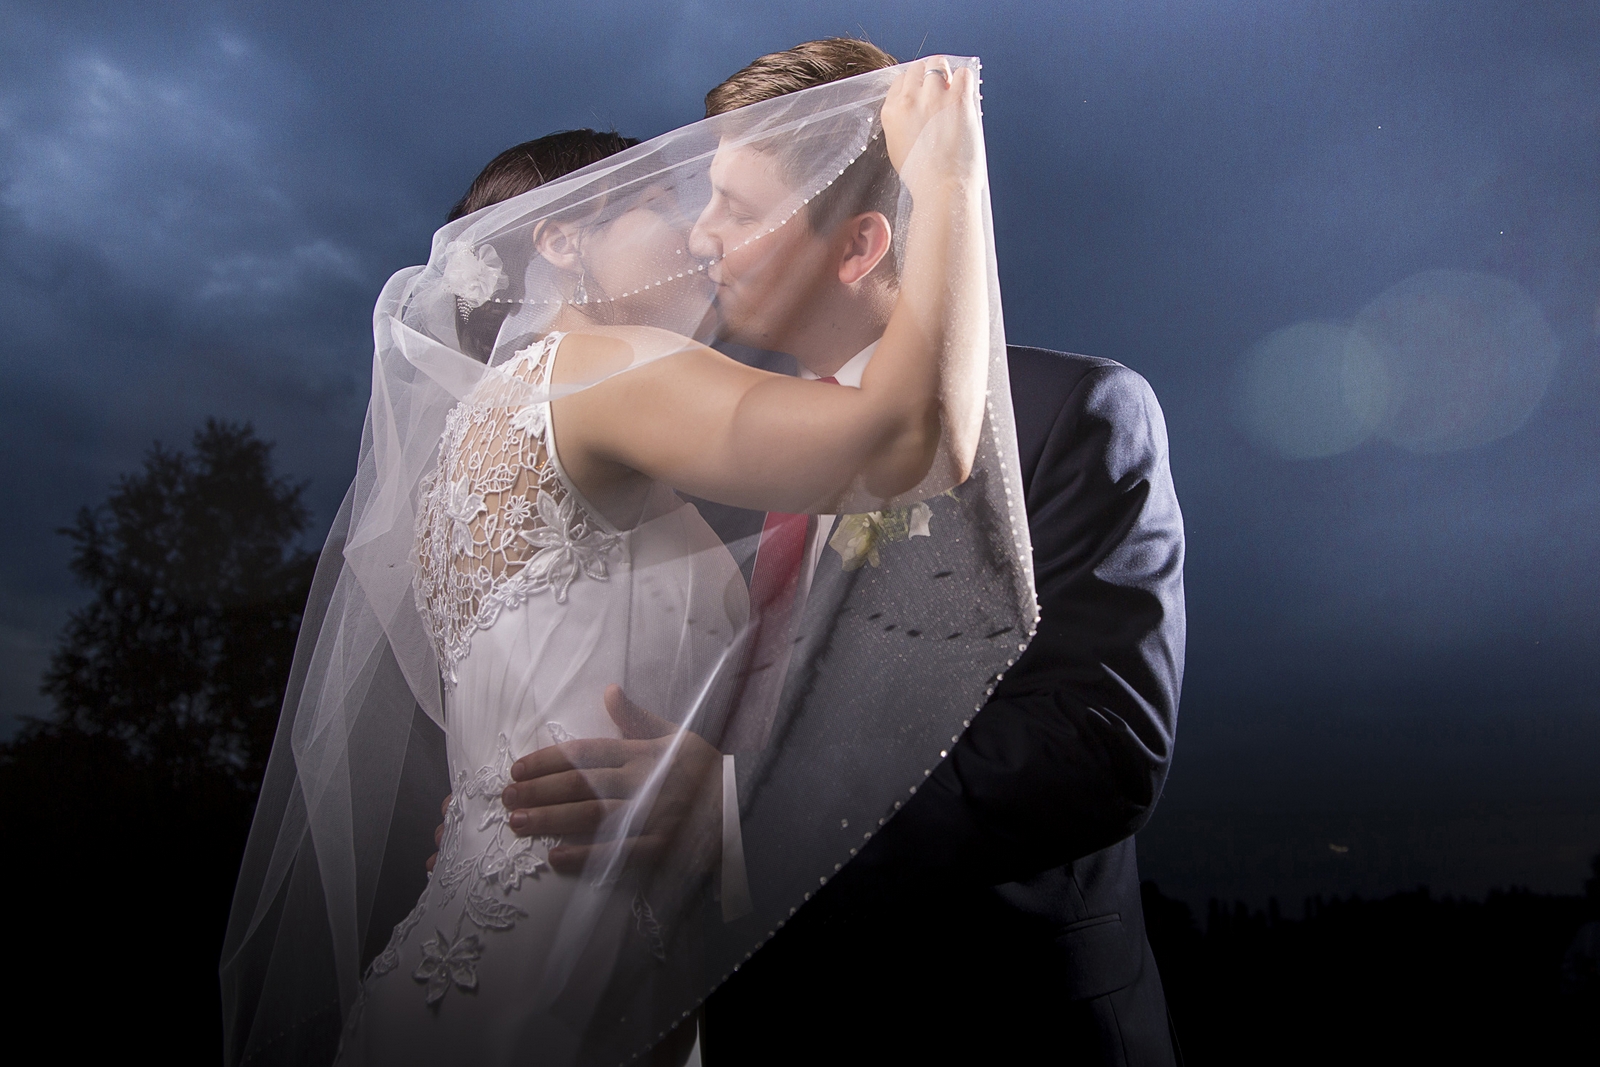 Plener fotograficzny podczas wesela - pocałunek w śwetle księżyca